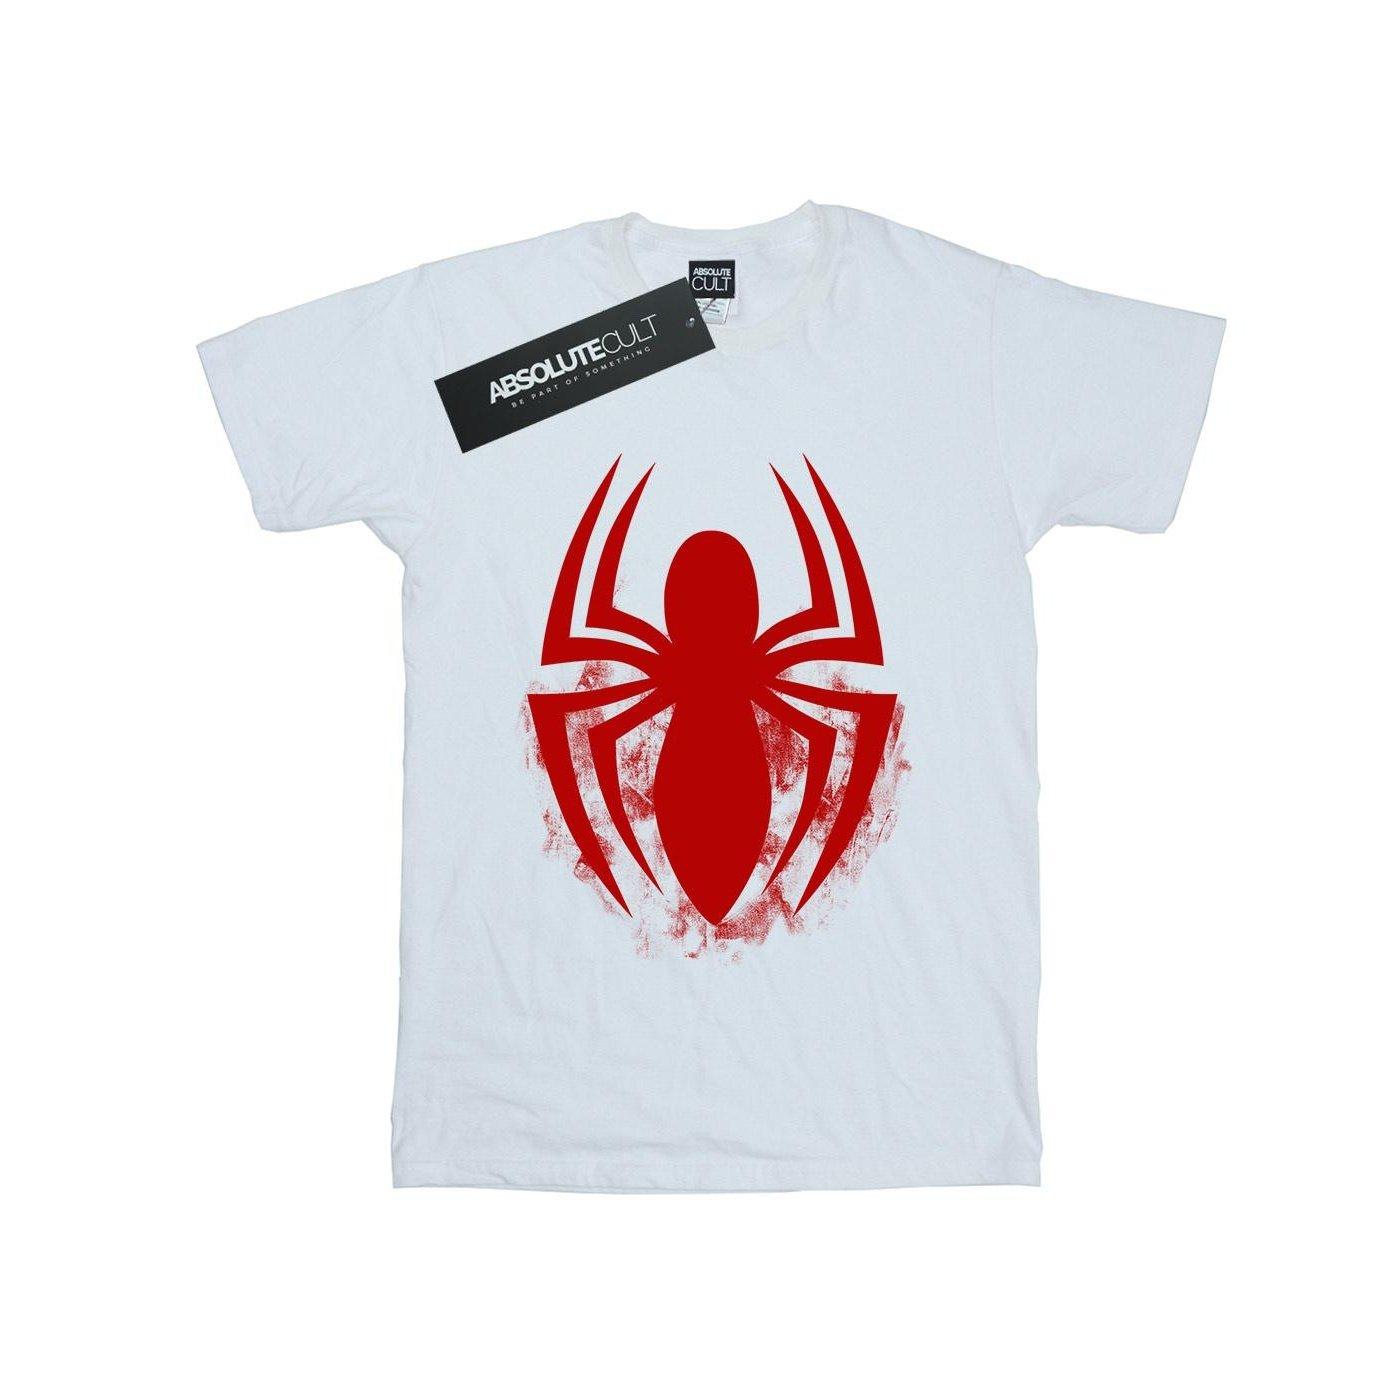 Tshirt Herren Weiss XL von Spider-Man